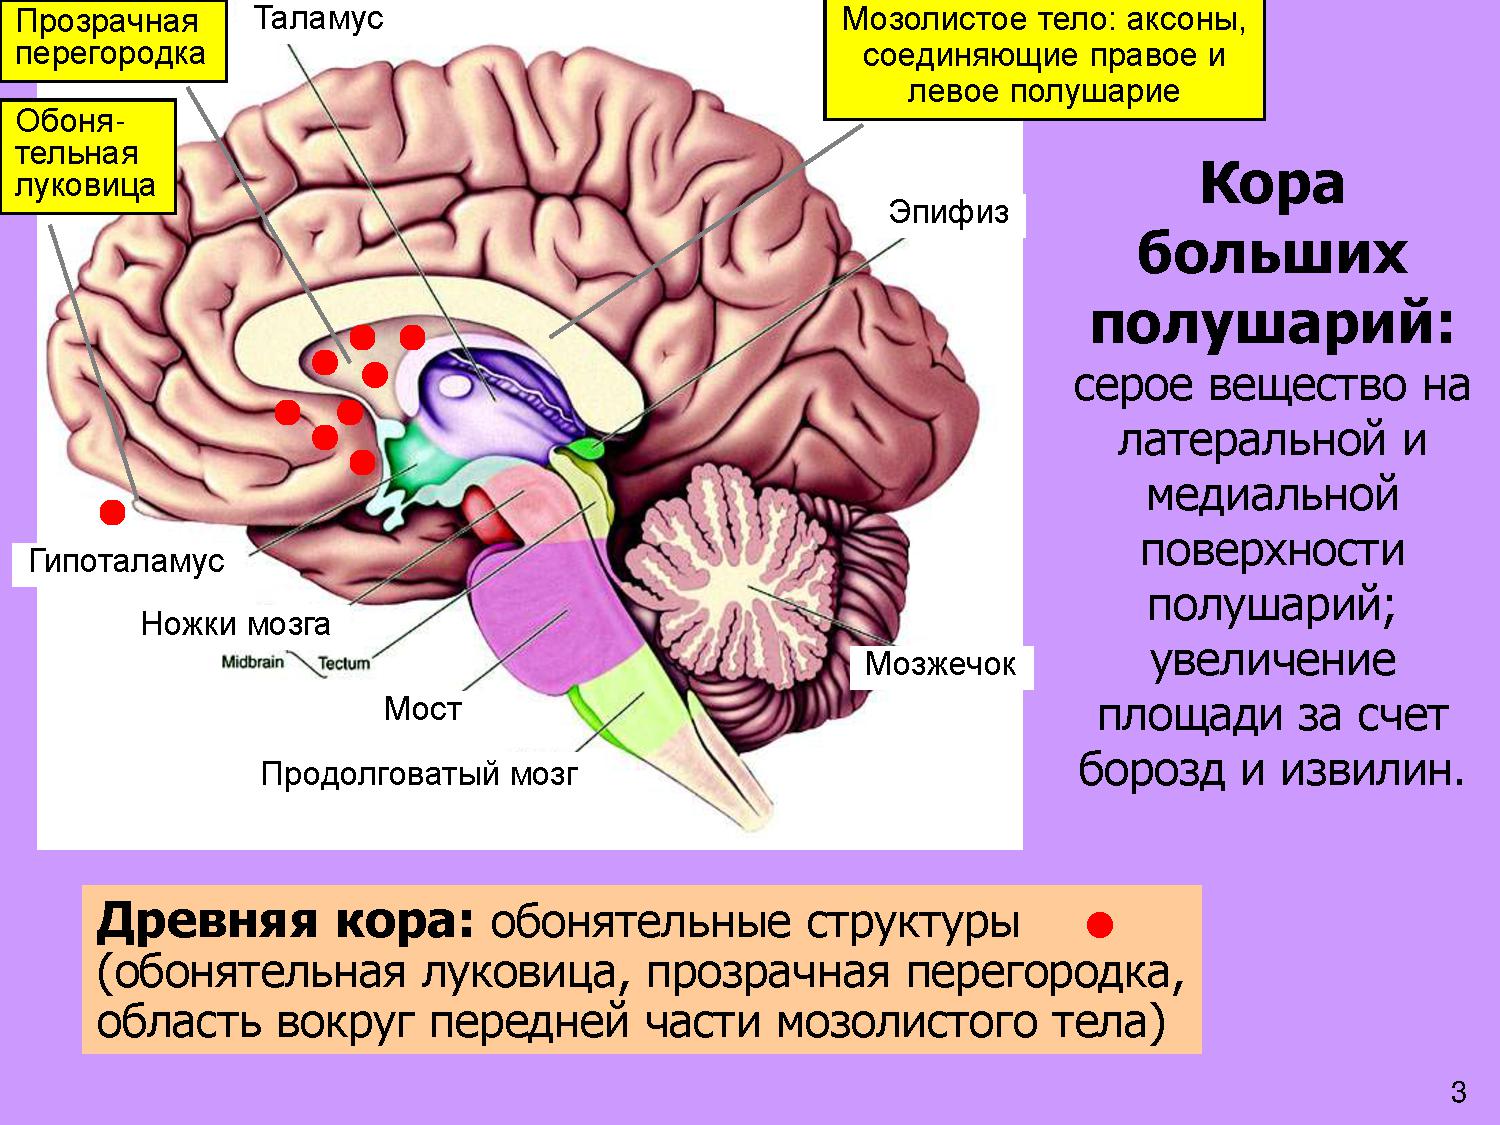 Полушария переднего мозга с зачатками коры. Мозолистое тело конечного мозга функции. Прозрачная перегородка мозга анатомия. Строение мозолистого тела головного мозга. Таламус, гипоталамус, мост, мозжечок, продолговатый мозг..